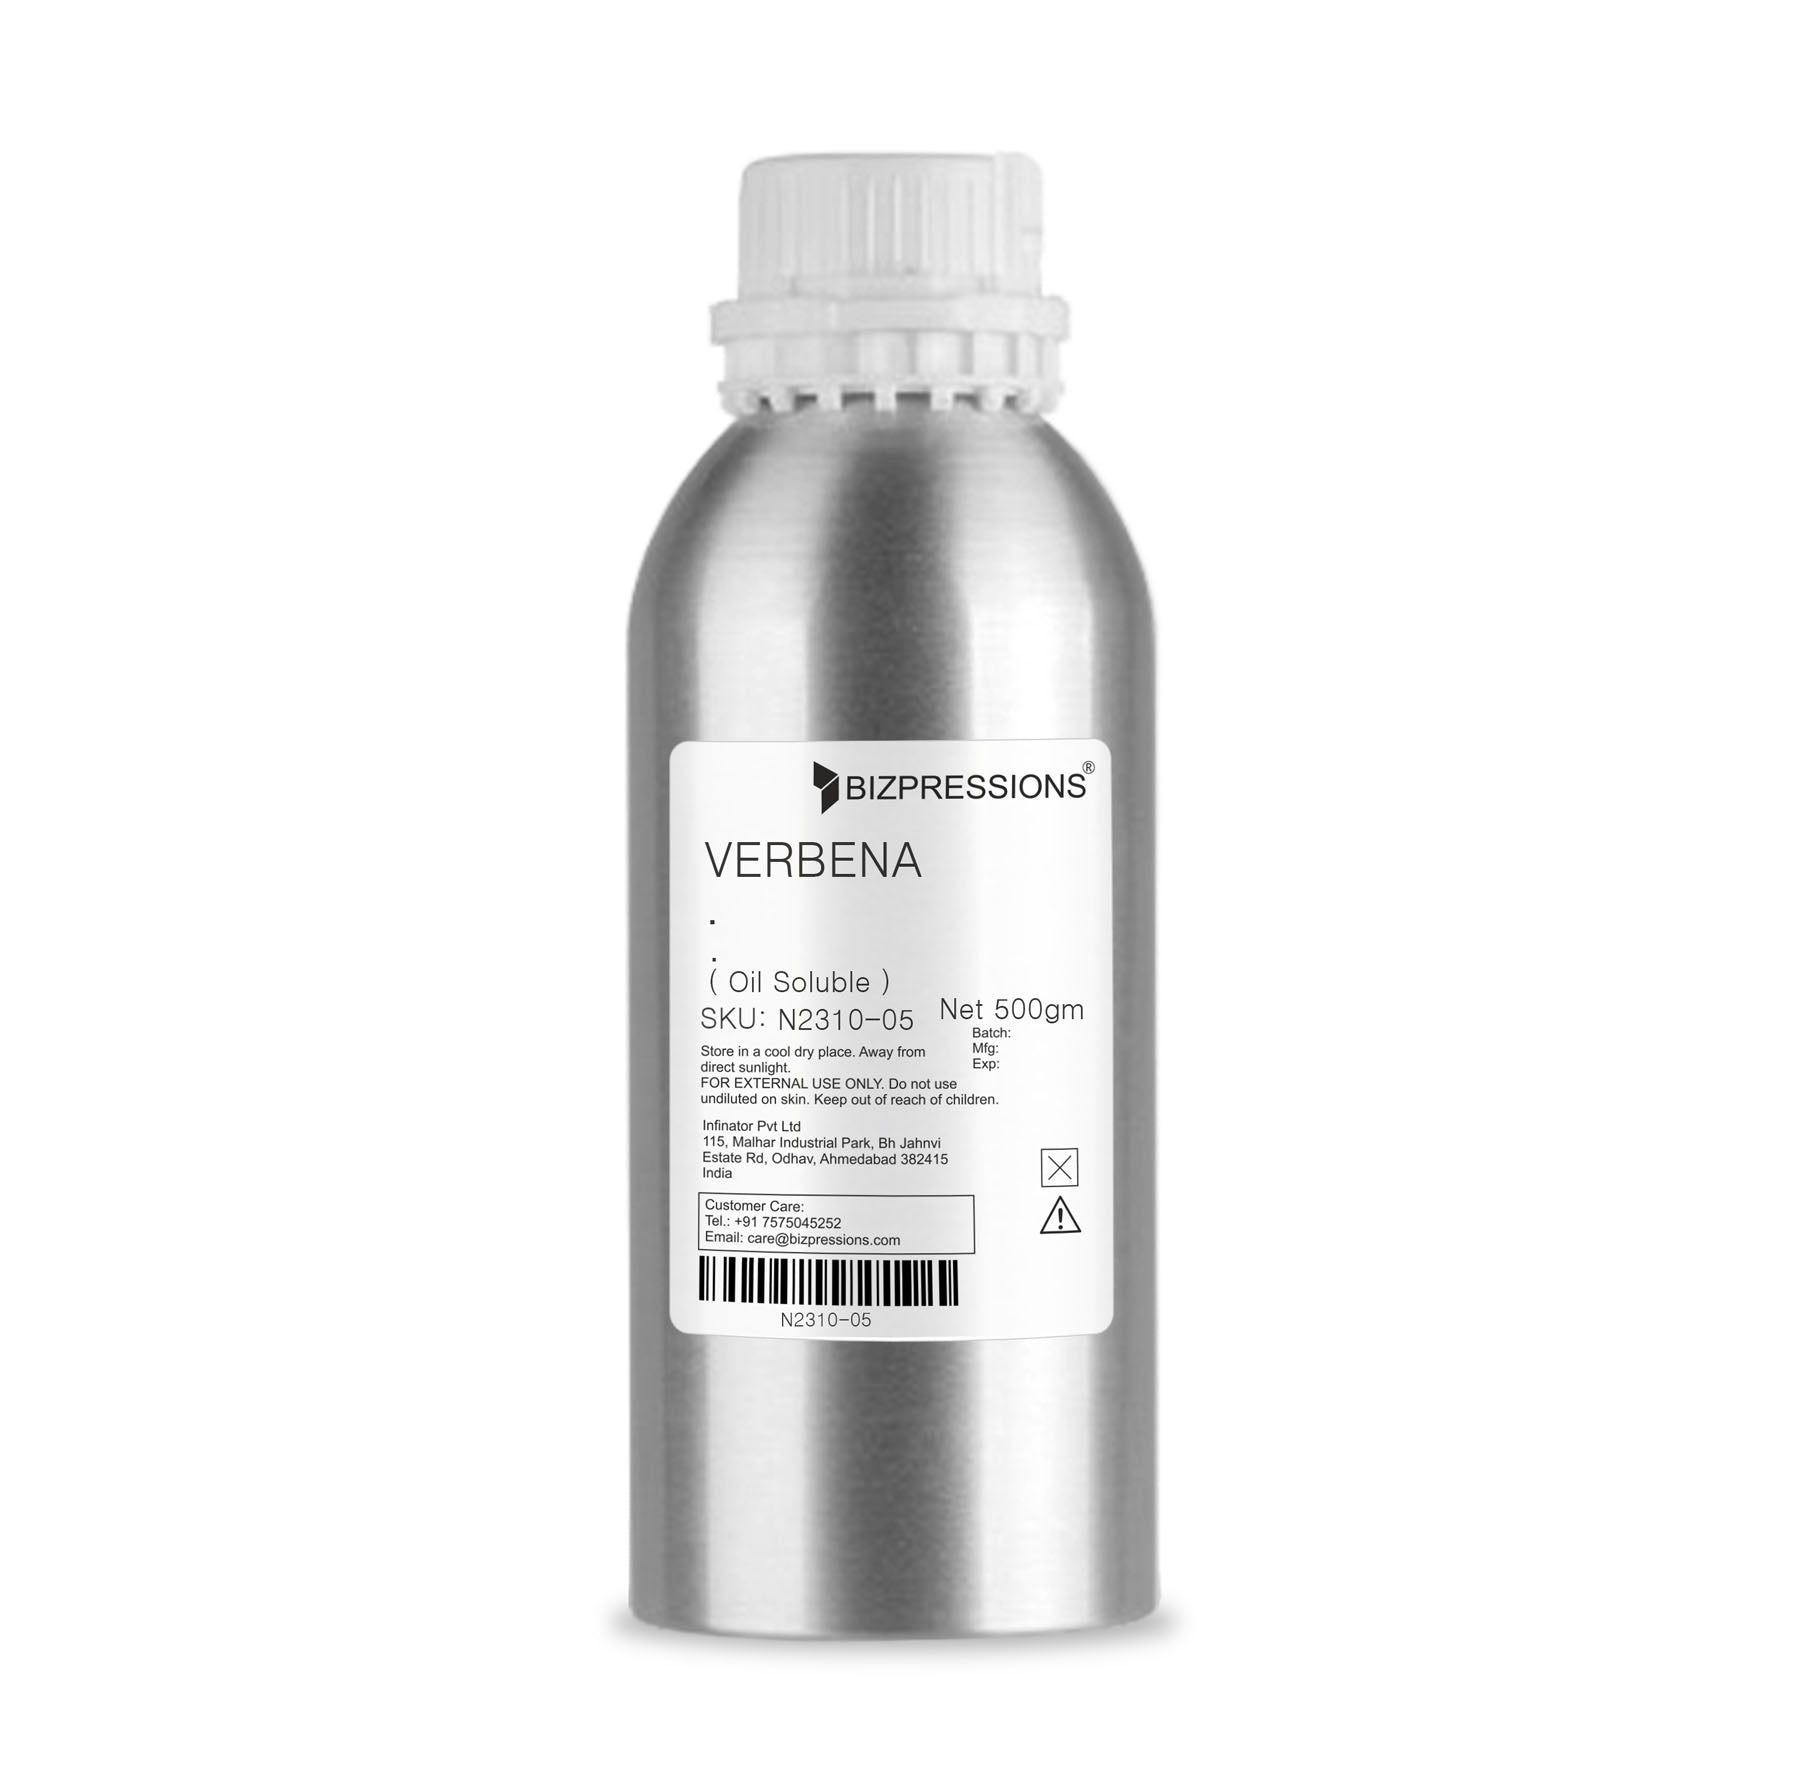 VERBENA - Fragrance ( Oil Soluble ) - 500 gm